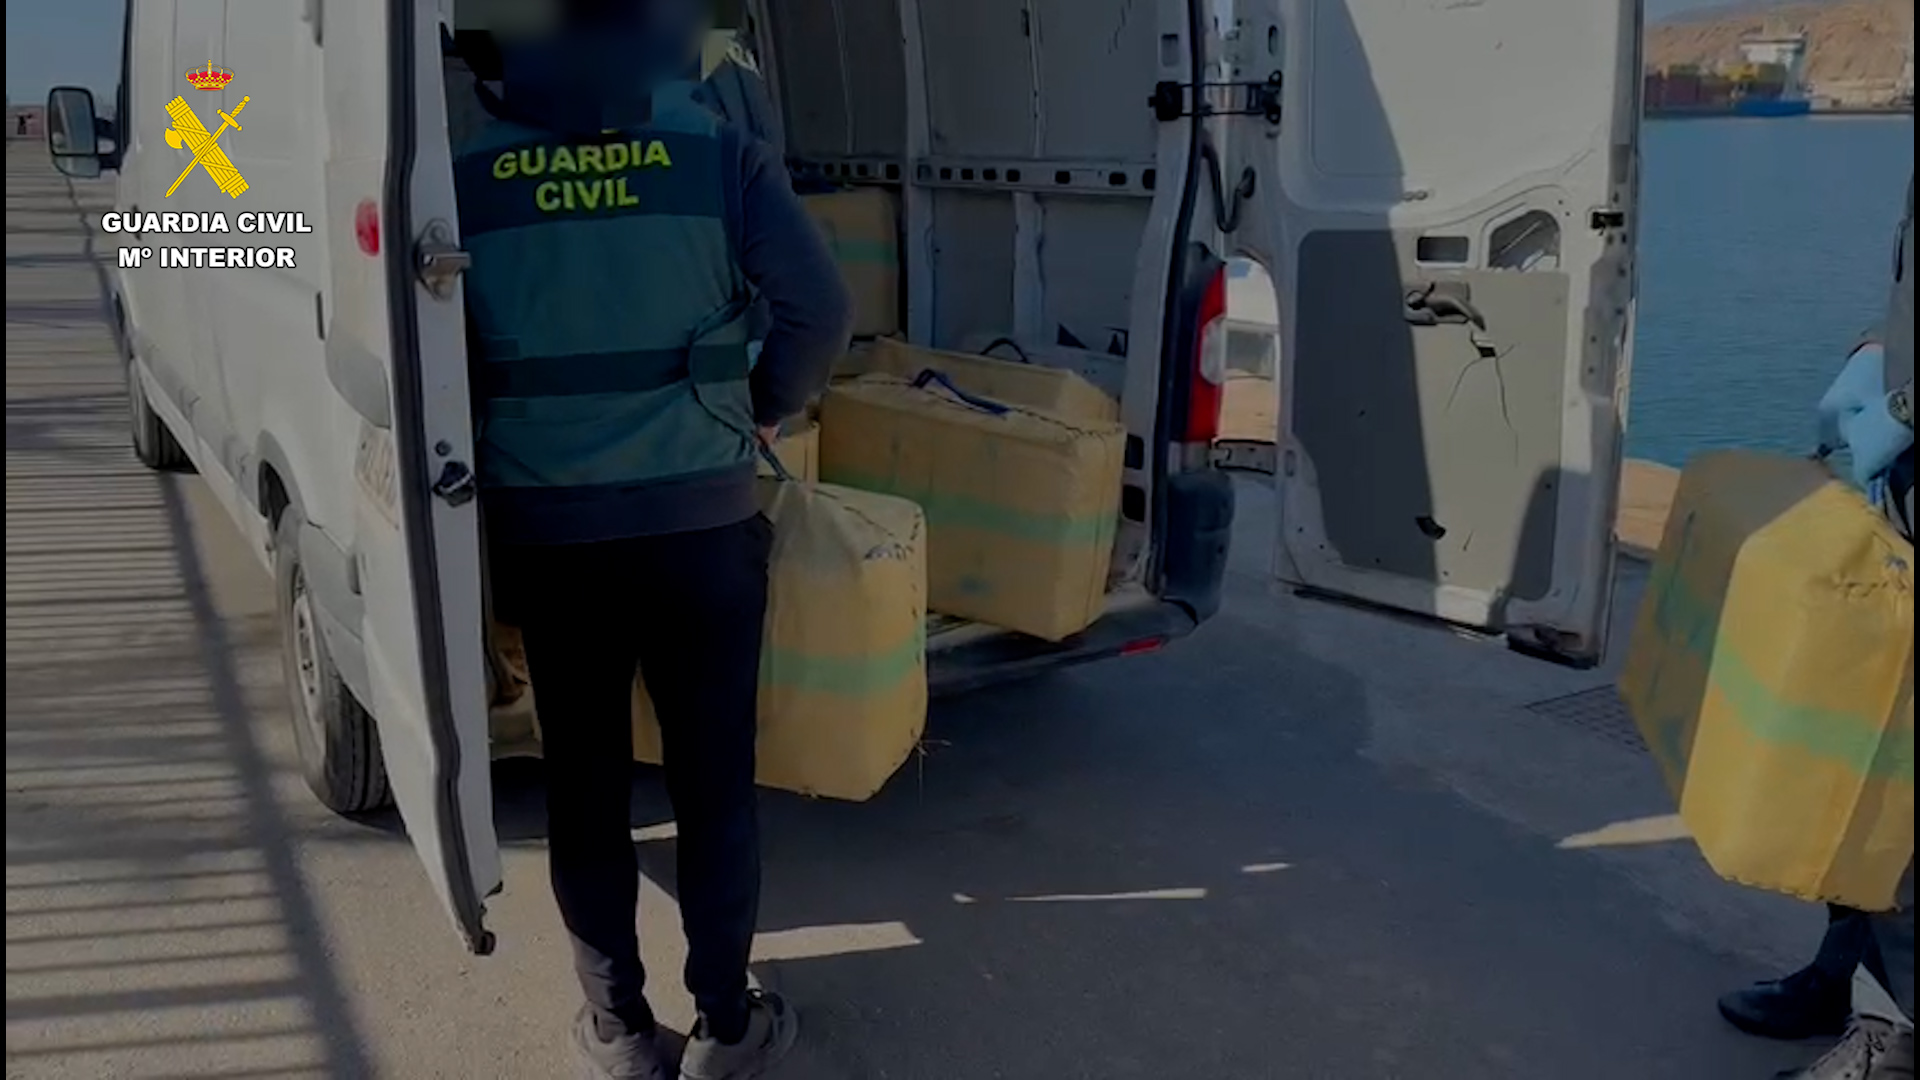 La Guardia Civil detiene a 11 personas e interviene 2.600 Kg de hachís en la costa almeriense